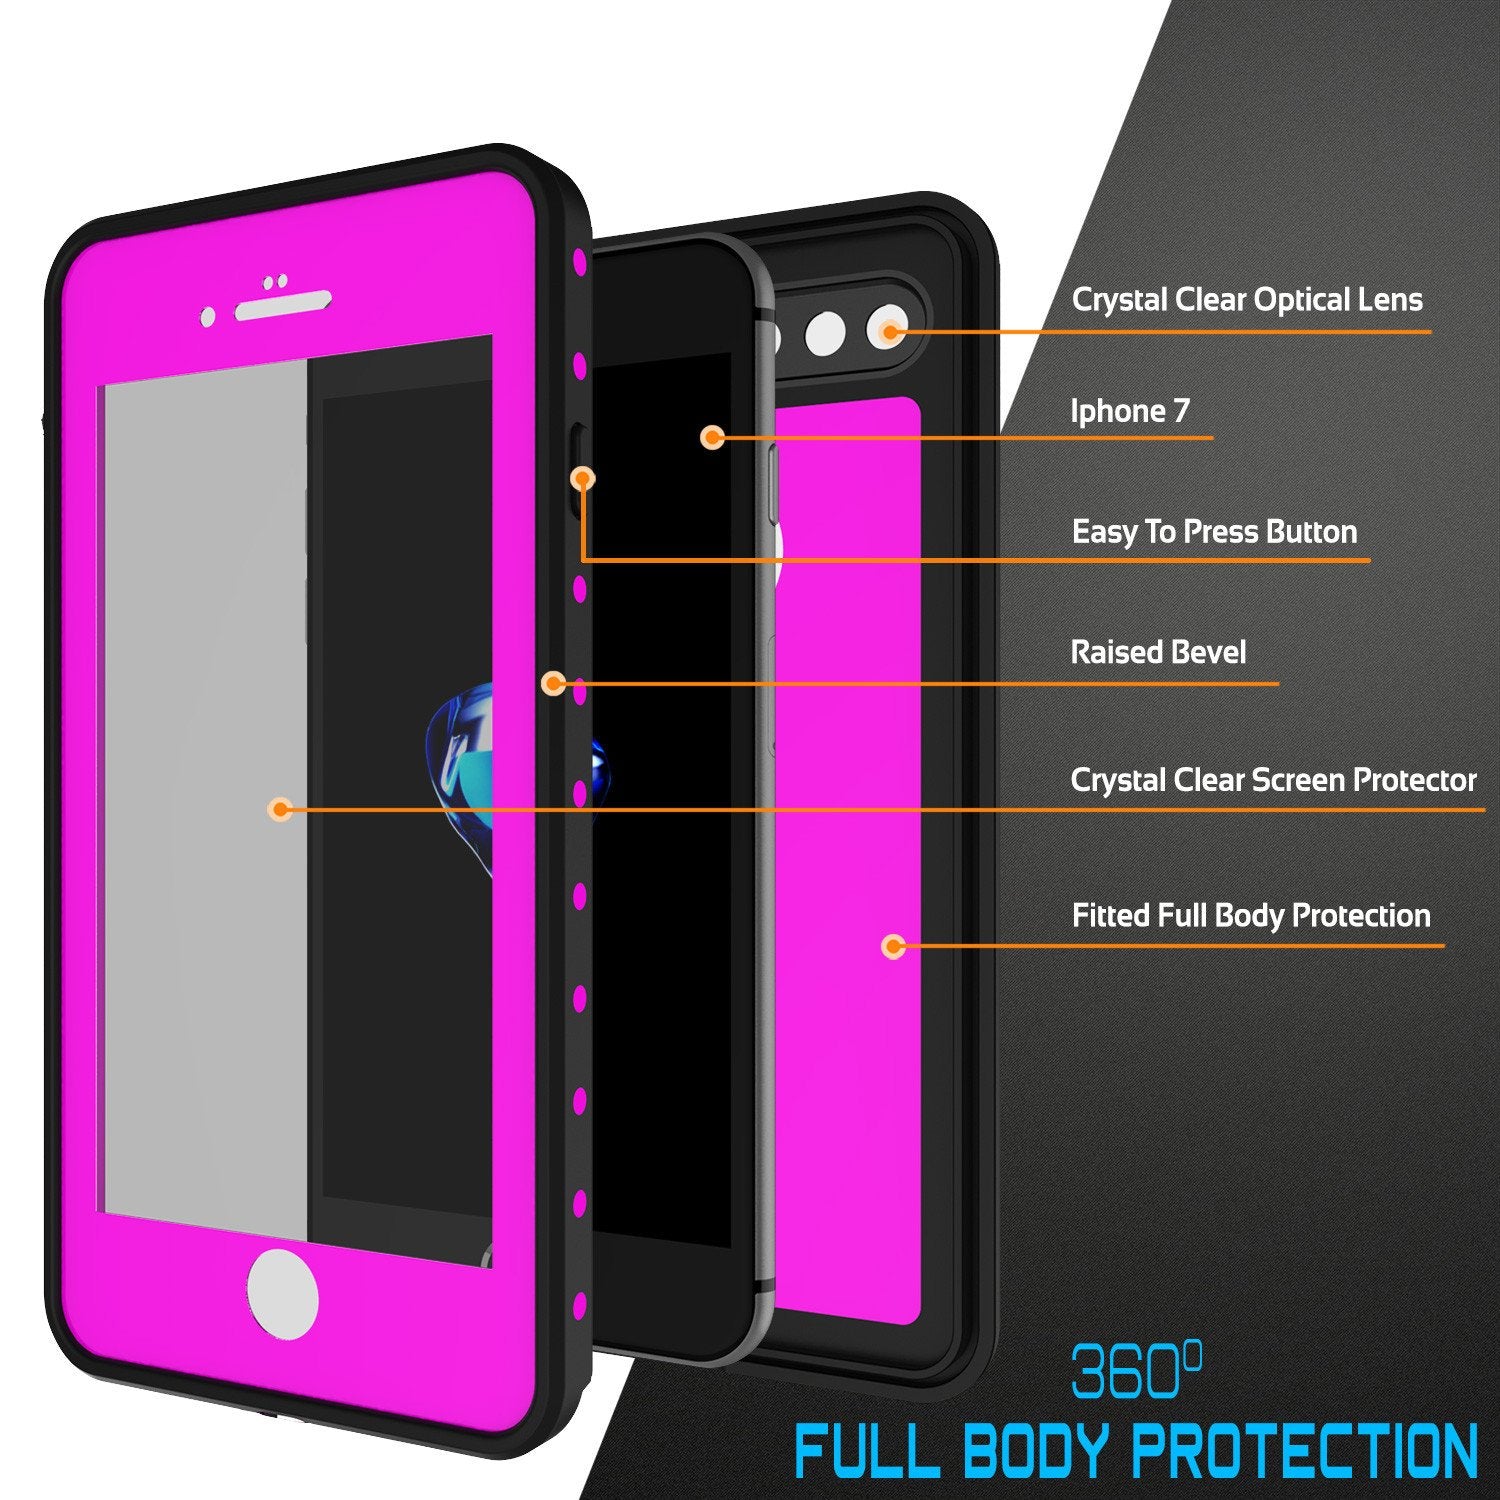 iPhone 8+ Plus Waterproof Case, Punkcase [StudStar Series] [Pink] [Slim Fit] [IP68 Certified] [Shockproof] [Dirtproof] Armor Cover